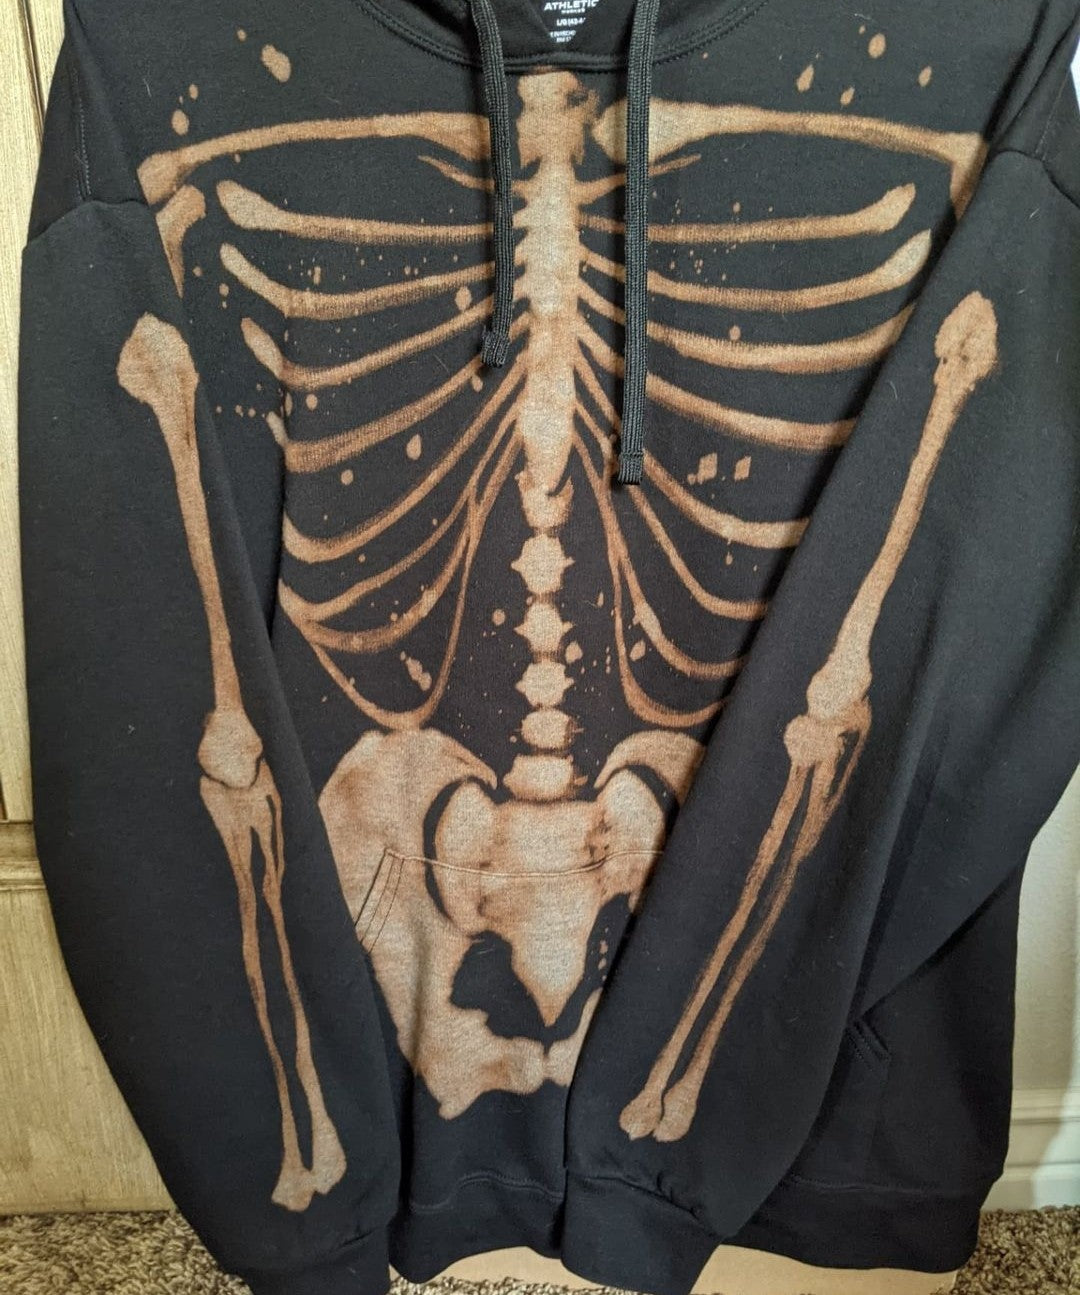 Skeleton hoodie